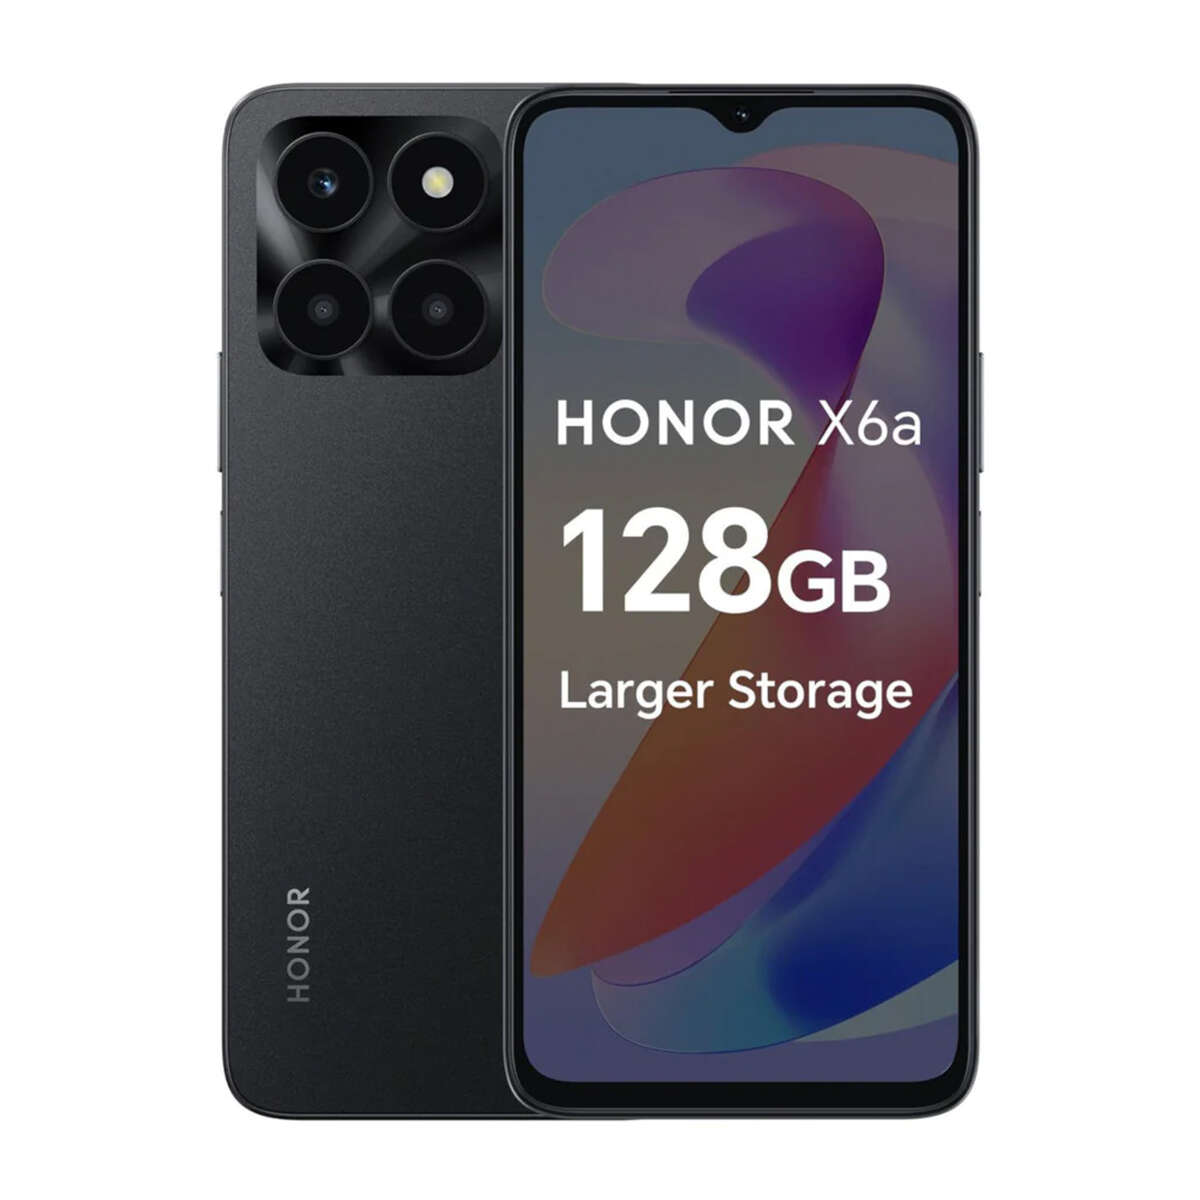 Honor smartfón x6a 4/128gb dualsim, čierny 5109atma